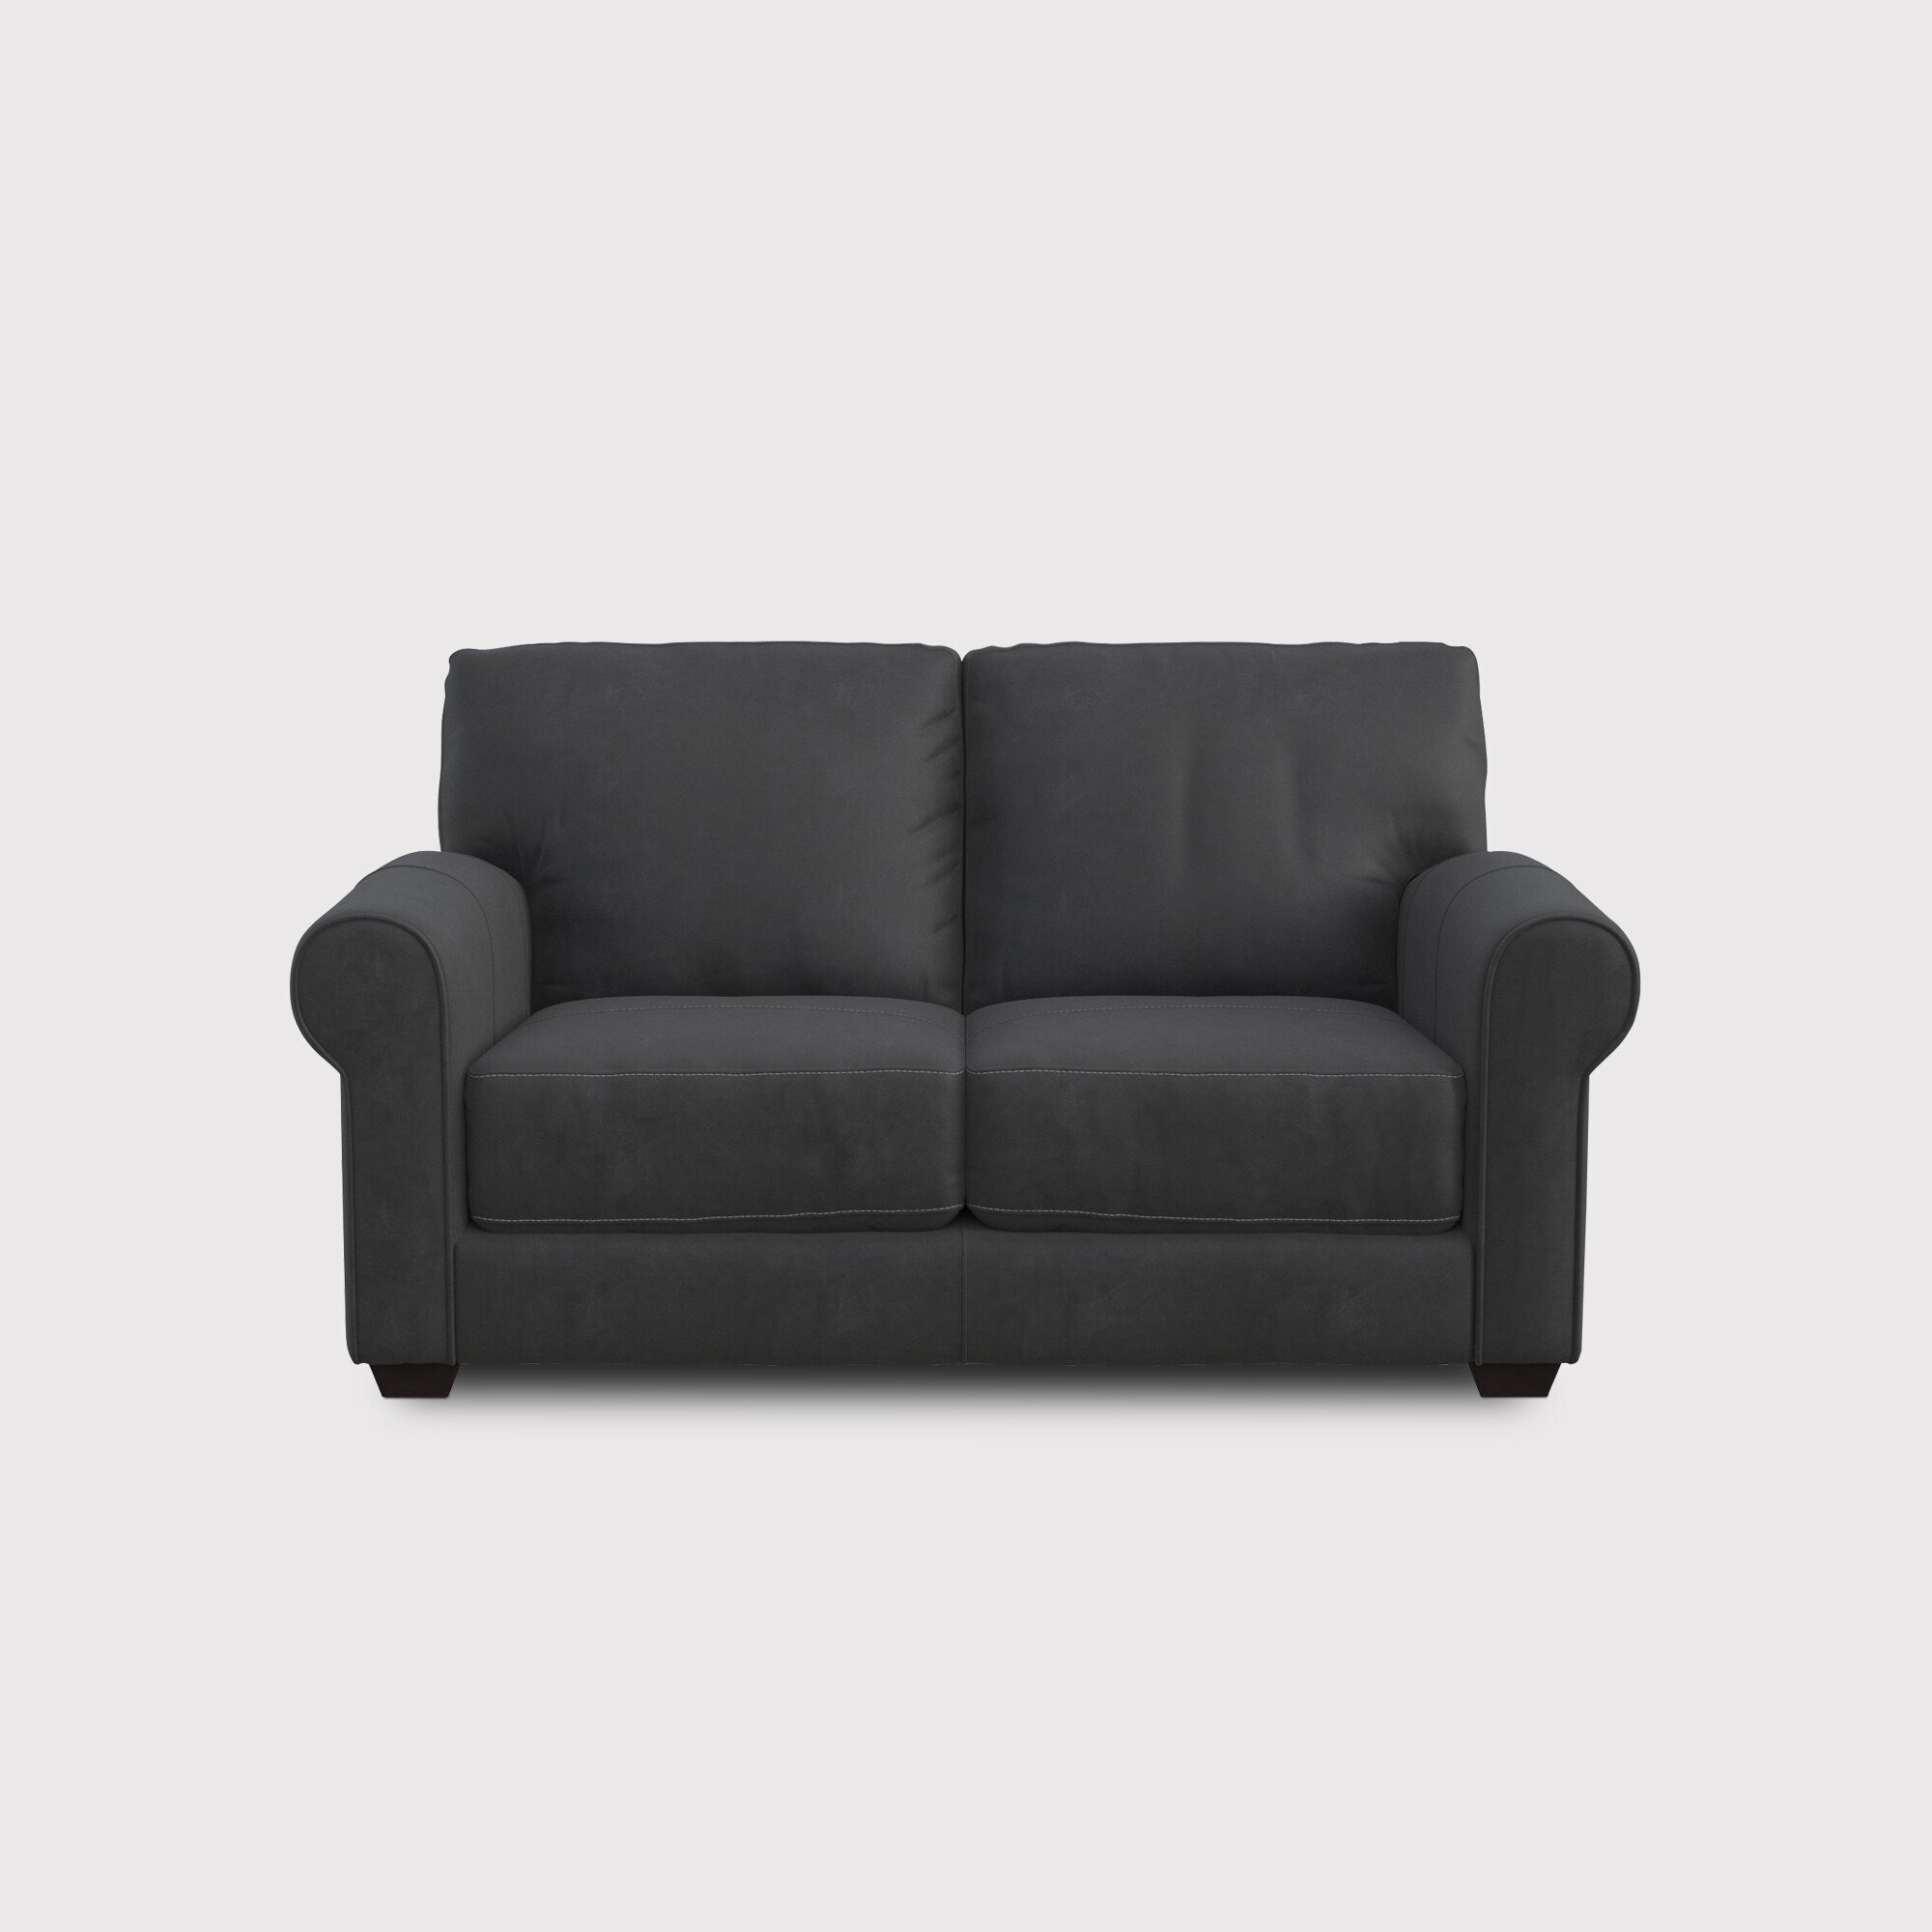 Houston Loveseat Sofa, Grey Leather - Barker & Stonehouse - image 1